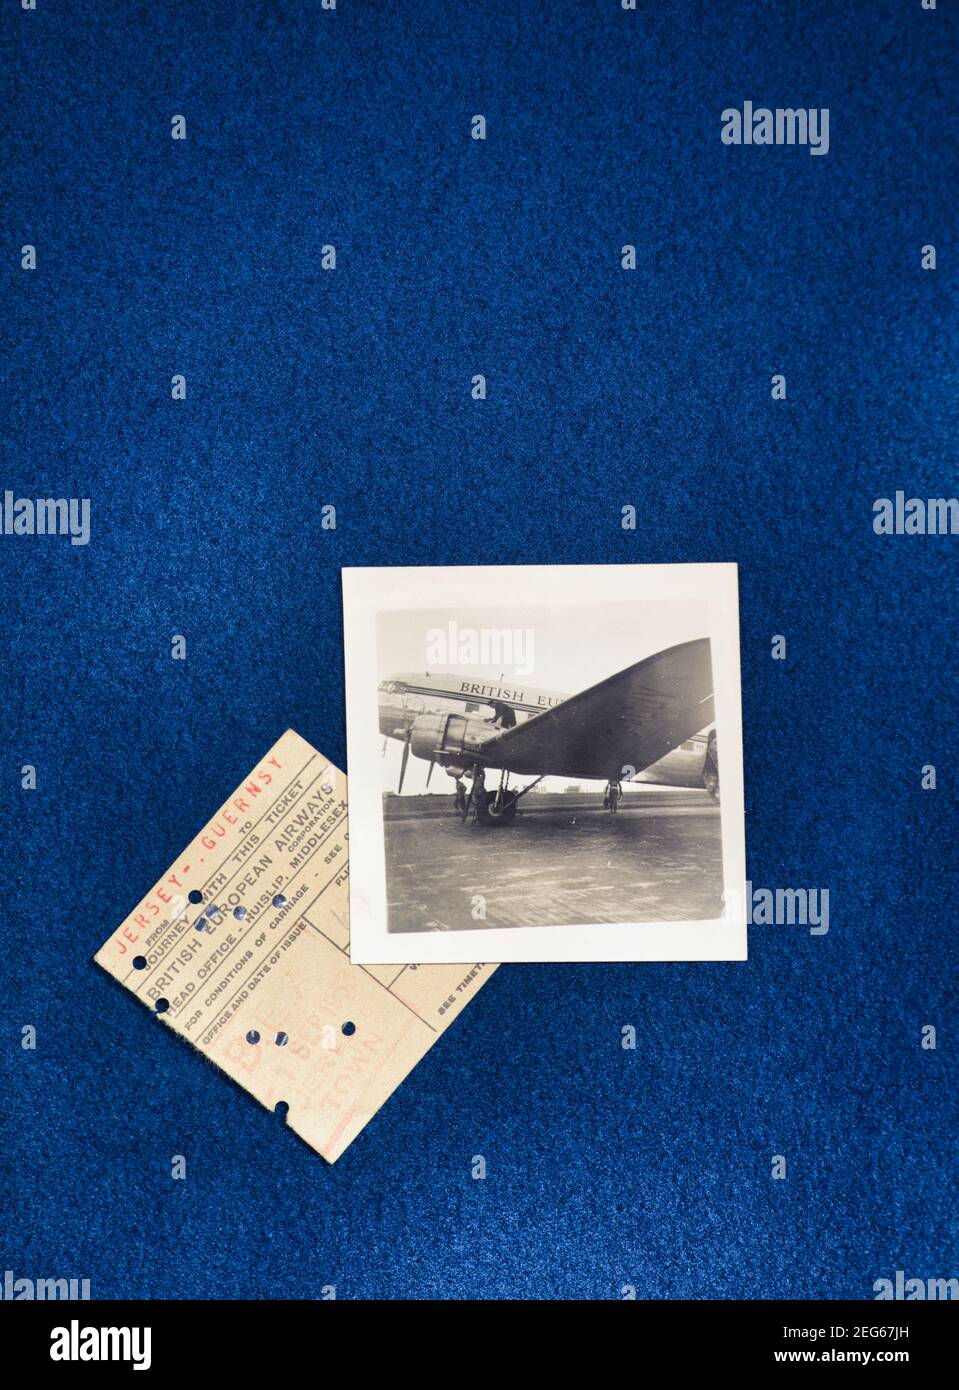 Avion de compagnie British European Airways à l'aéroport de Jersey et  billet pour aller à Guernesey à partir de 1953. Concept nostalgie, antan,  remémorer Photo Stock - Alamy